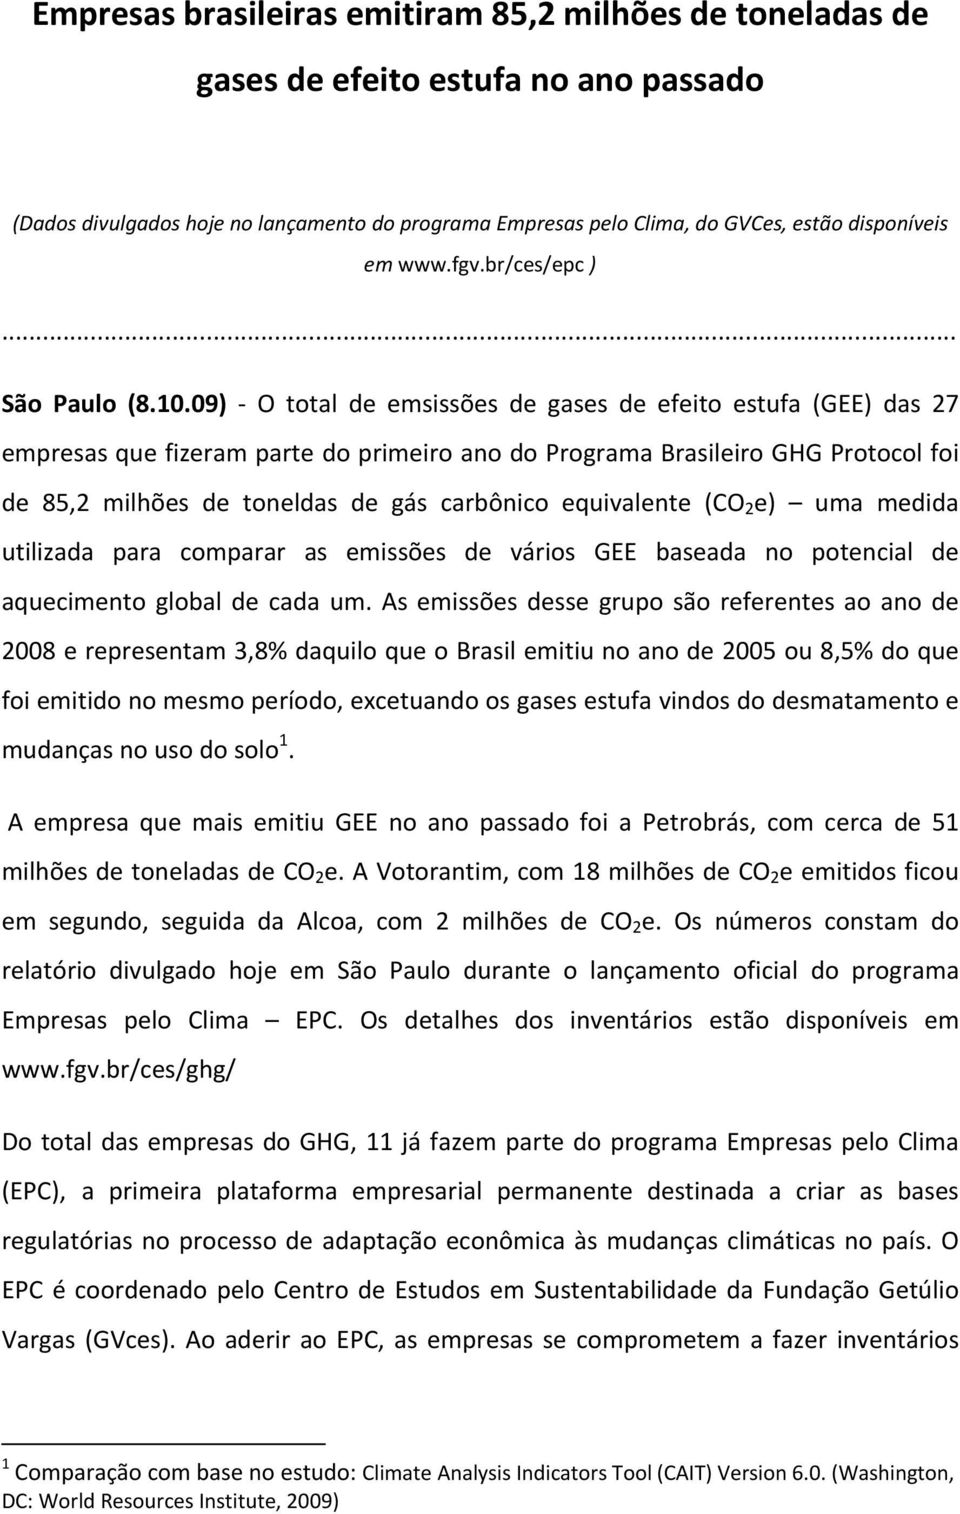 09) O total de emsissões de gases de efeito estufa (GEE) das 27 empresas que fizeram parte do primeiro ano do Programa Brasileiro GHG Protocol foi de 85,2 milhões de toneldas de gás carbônico